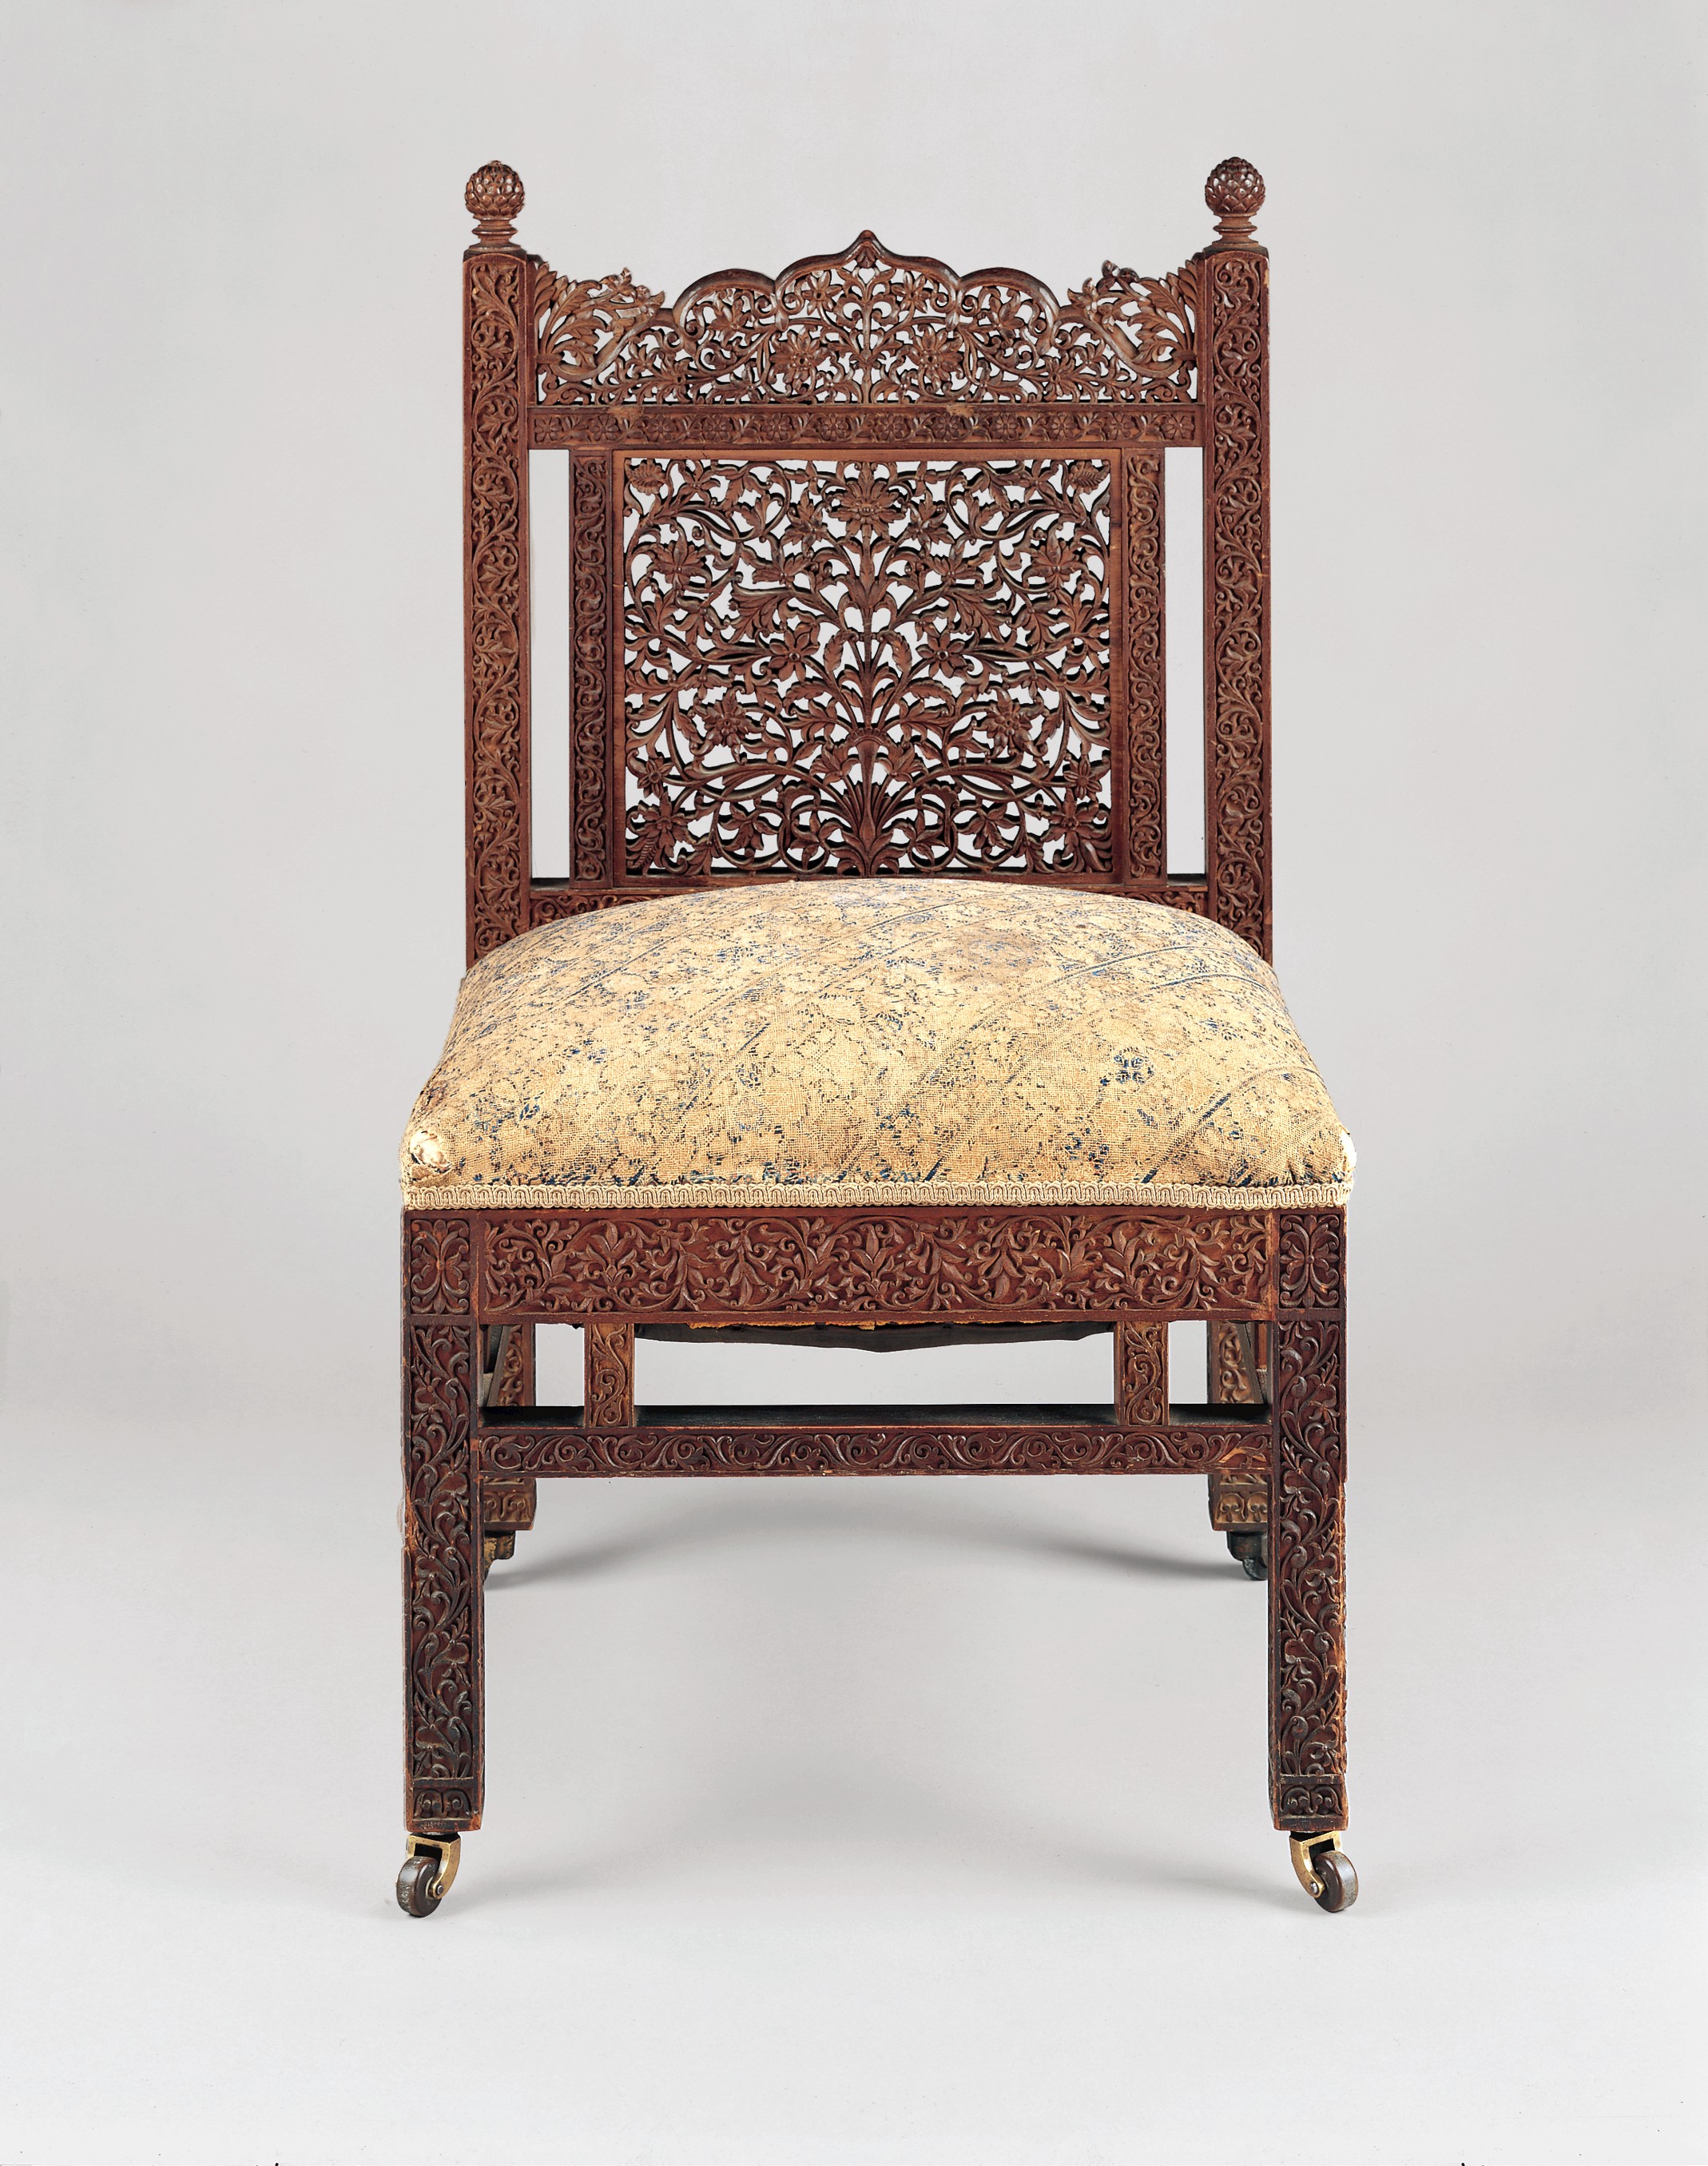 Krzesło by Lockwood de Forest - c. 1881-6 - 82.2 x 46.4 x 47 cm 